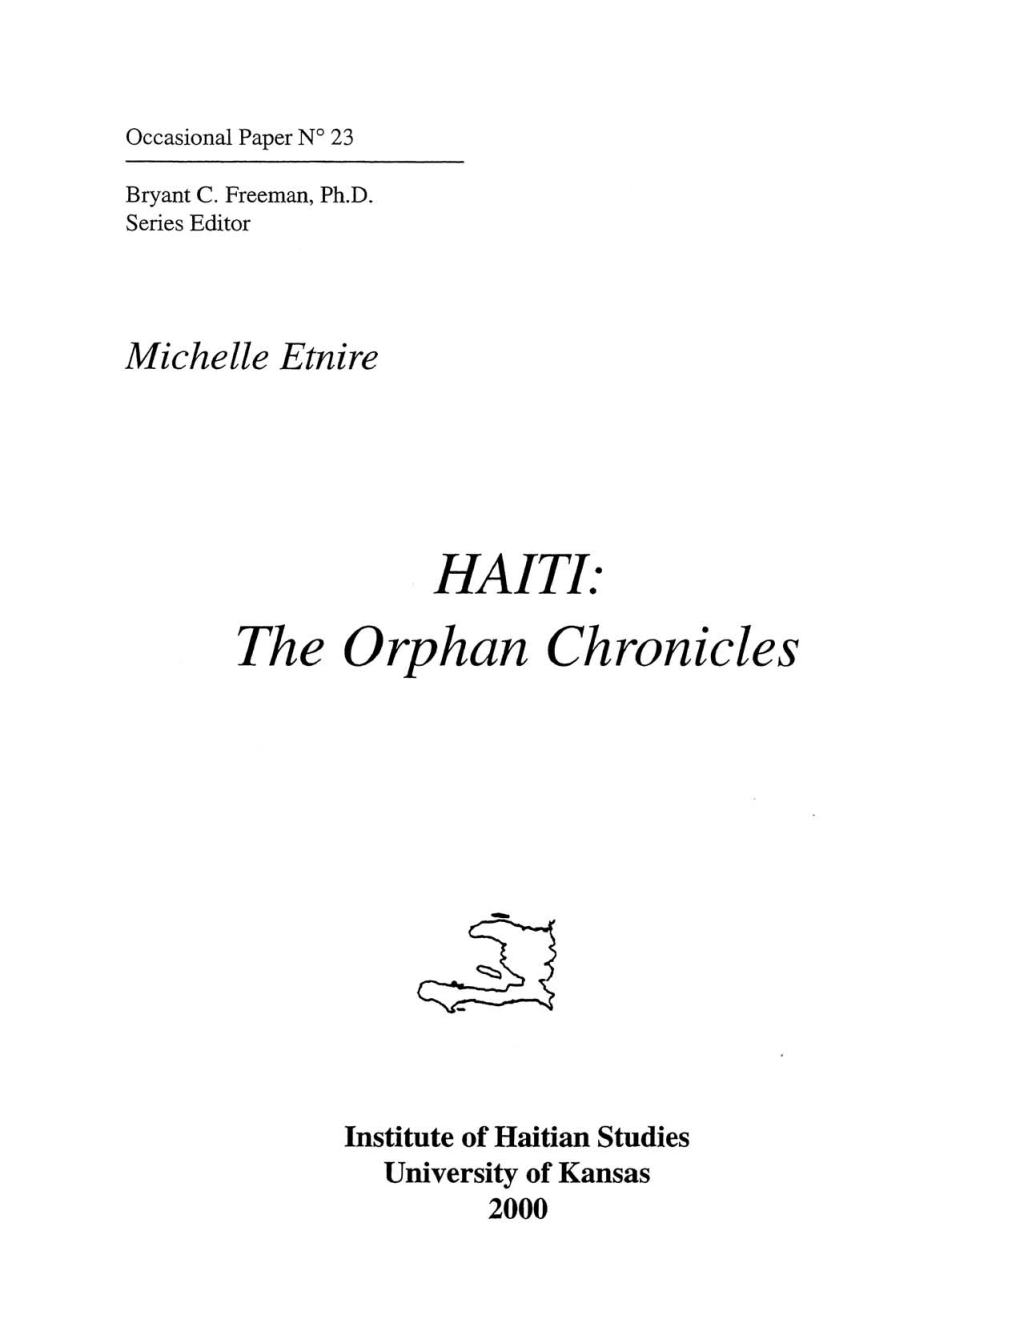 HAITI: the Orphan Chronicles